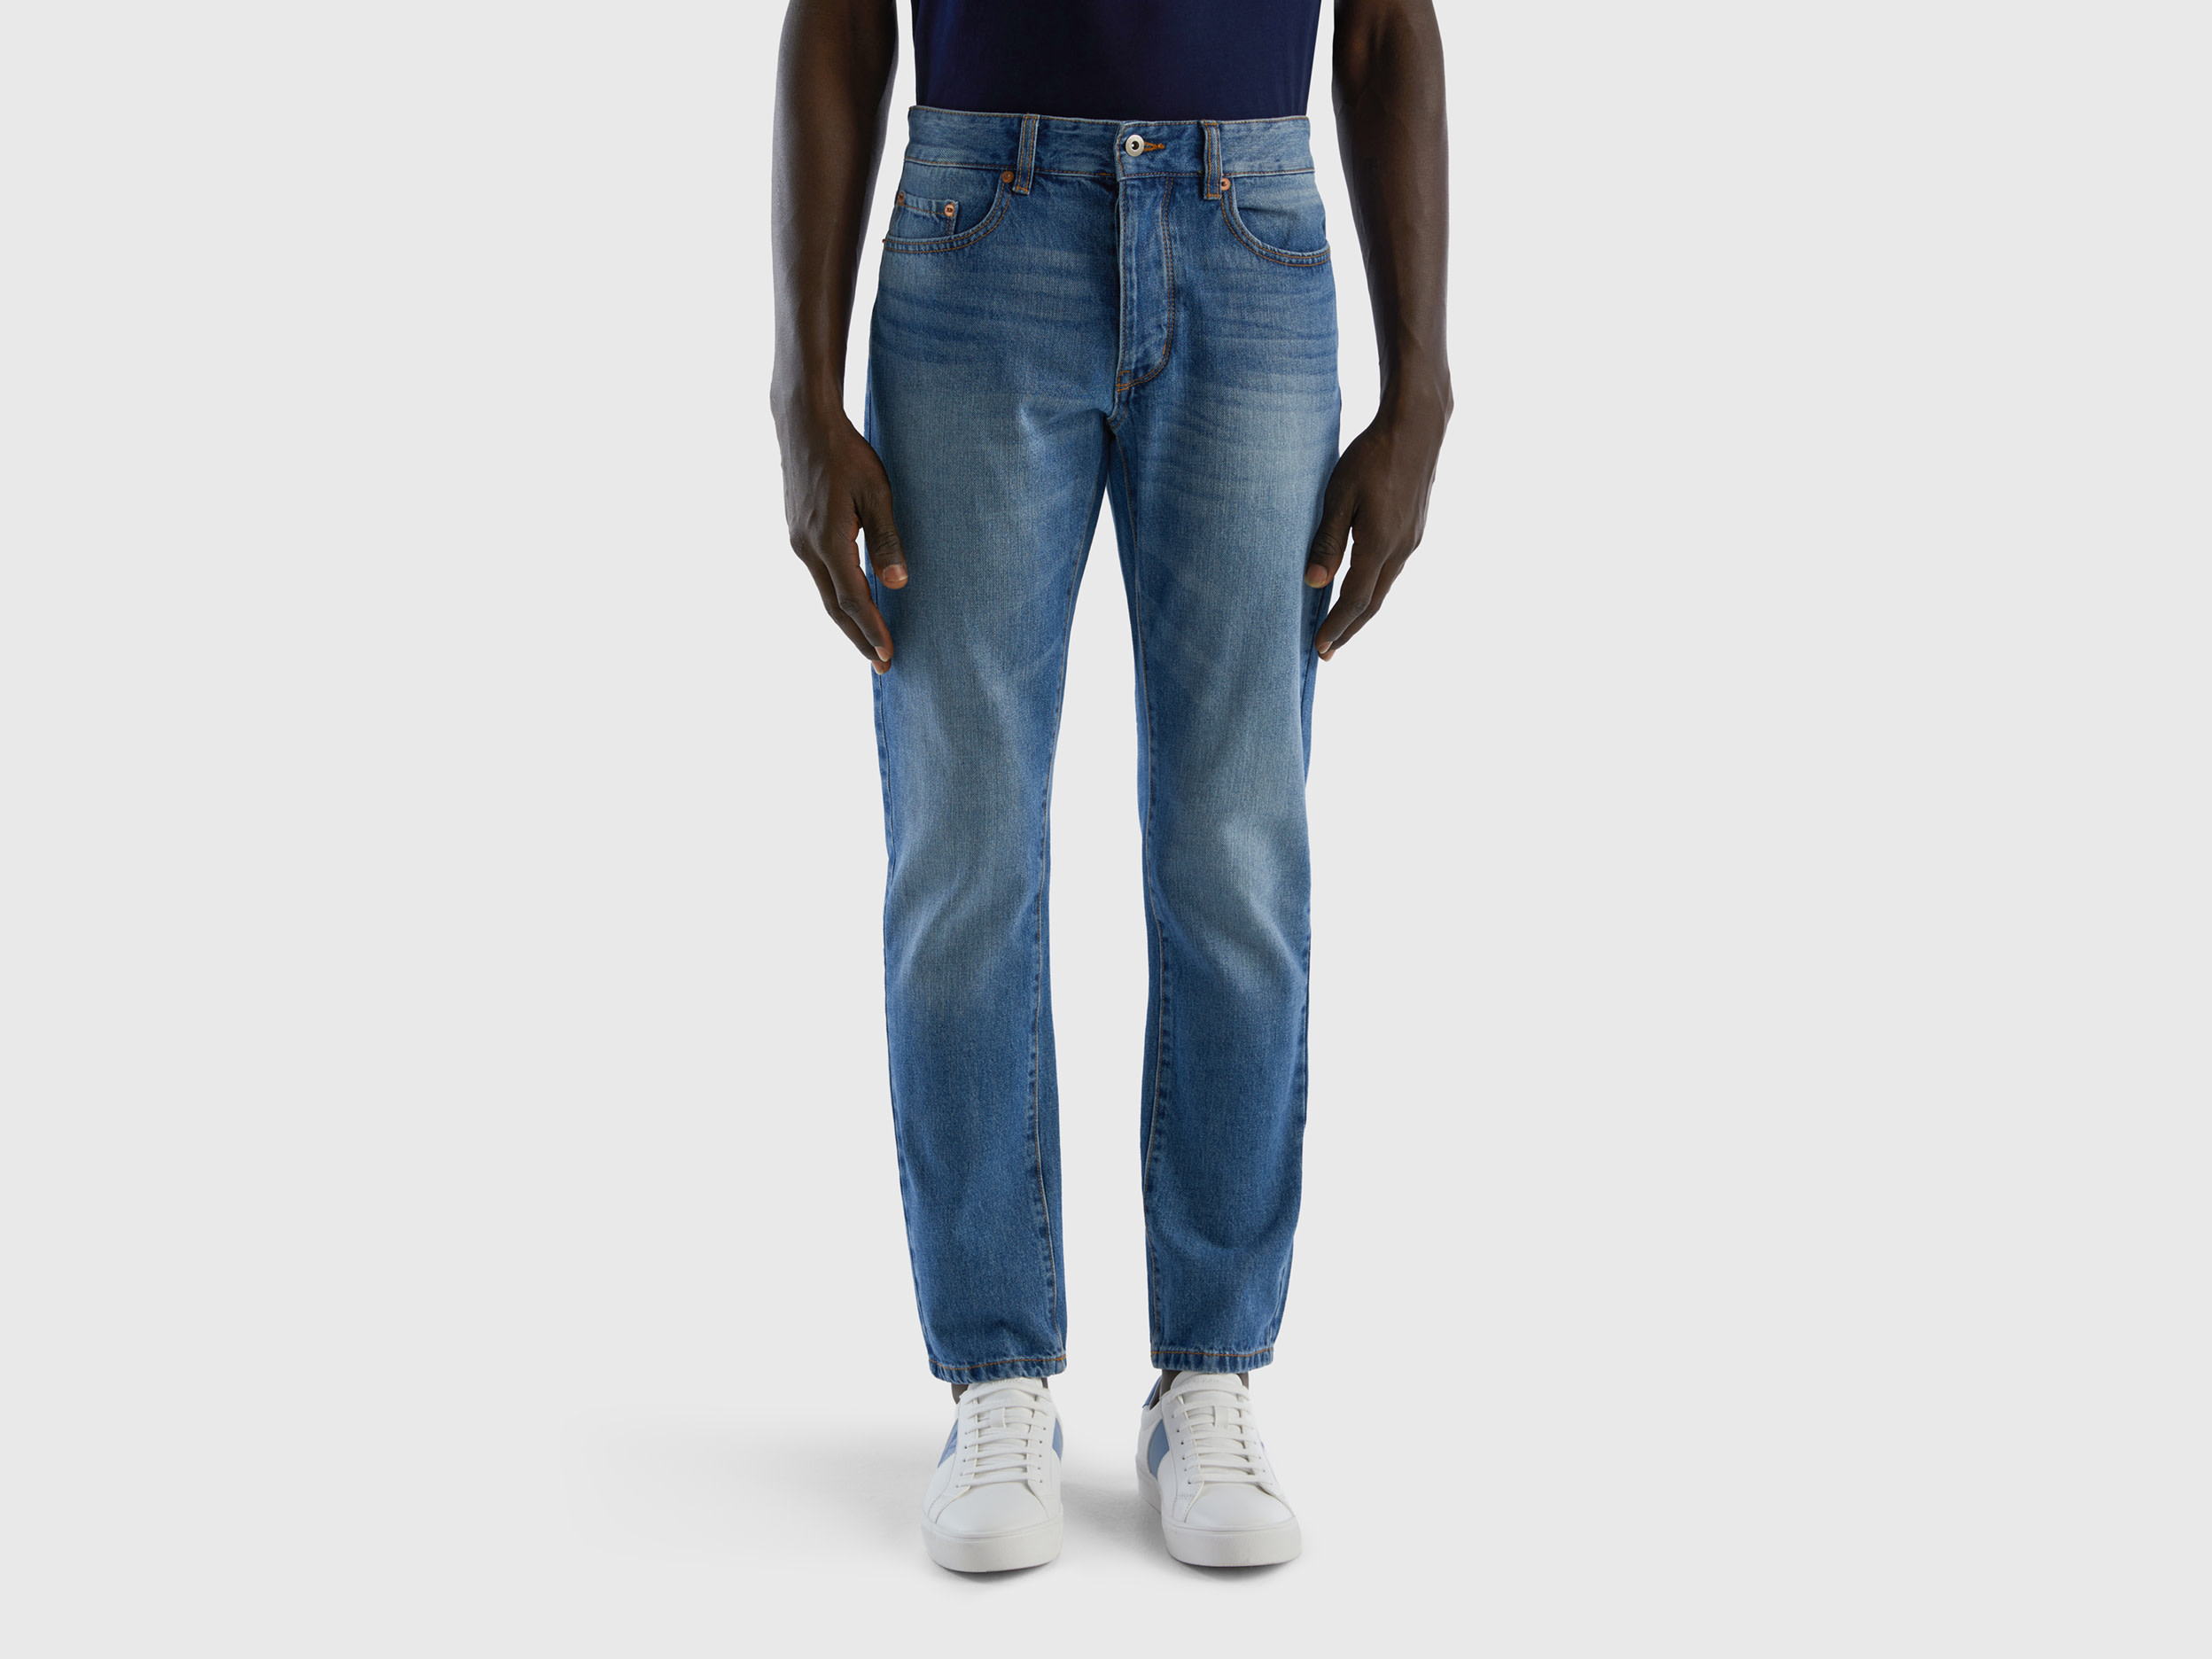 Benetton, Straight Leg 100% Cotton Jeans, size 31, Blue, Men